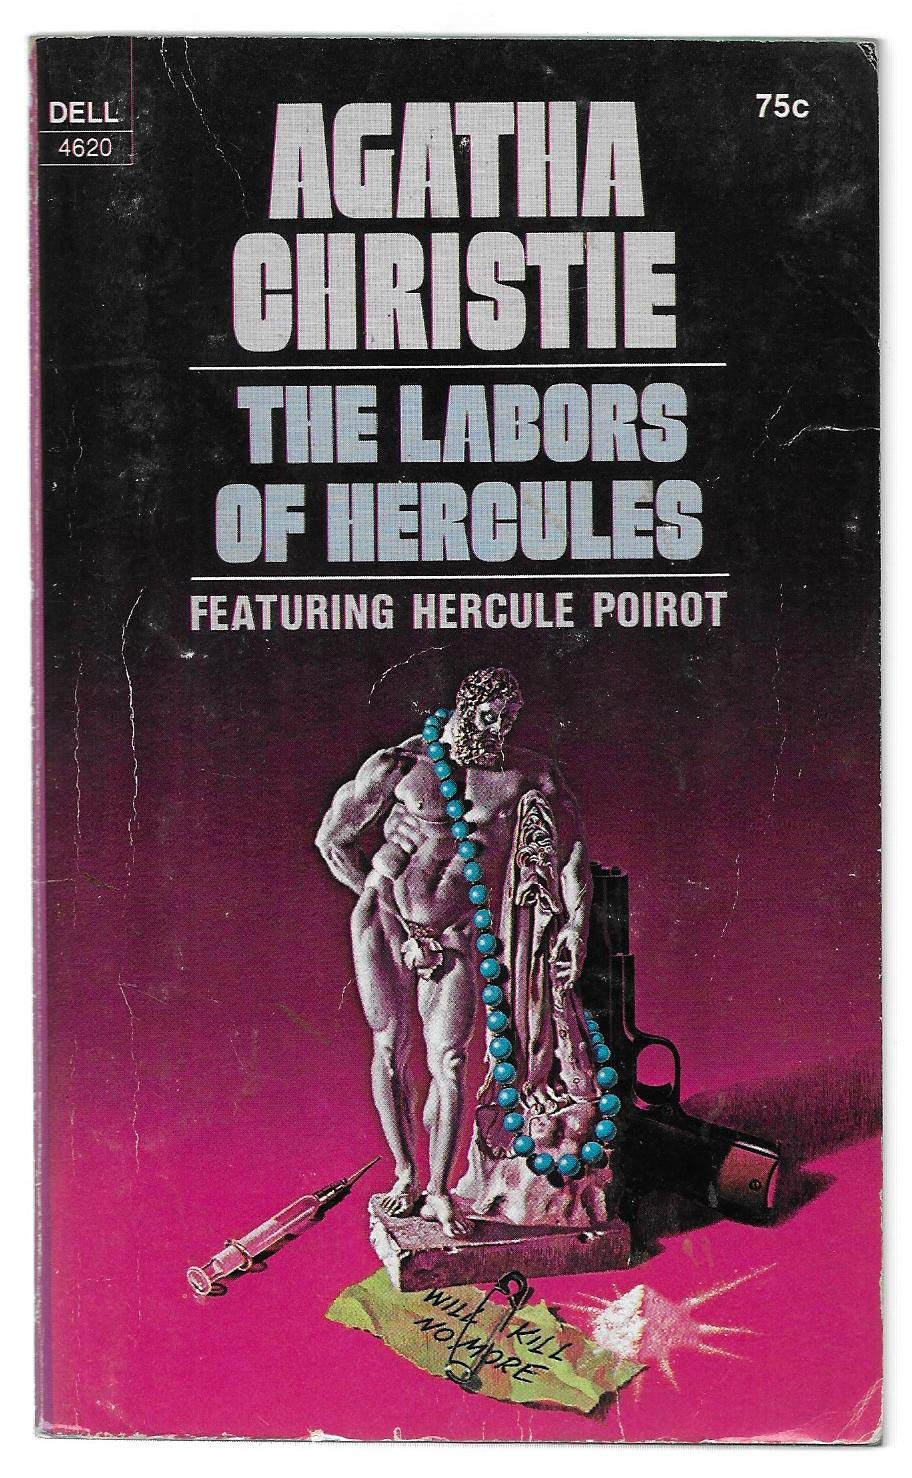 The Labors of Hercules, Featuring Hercule Poirot - Afbeelding 1 van 1